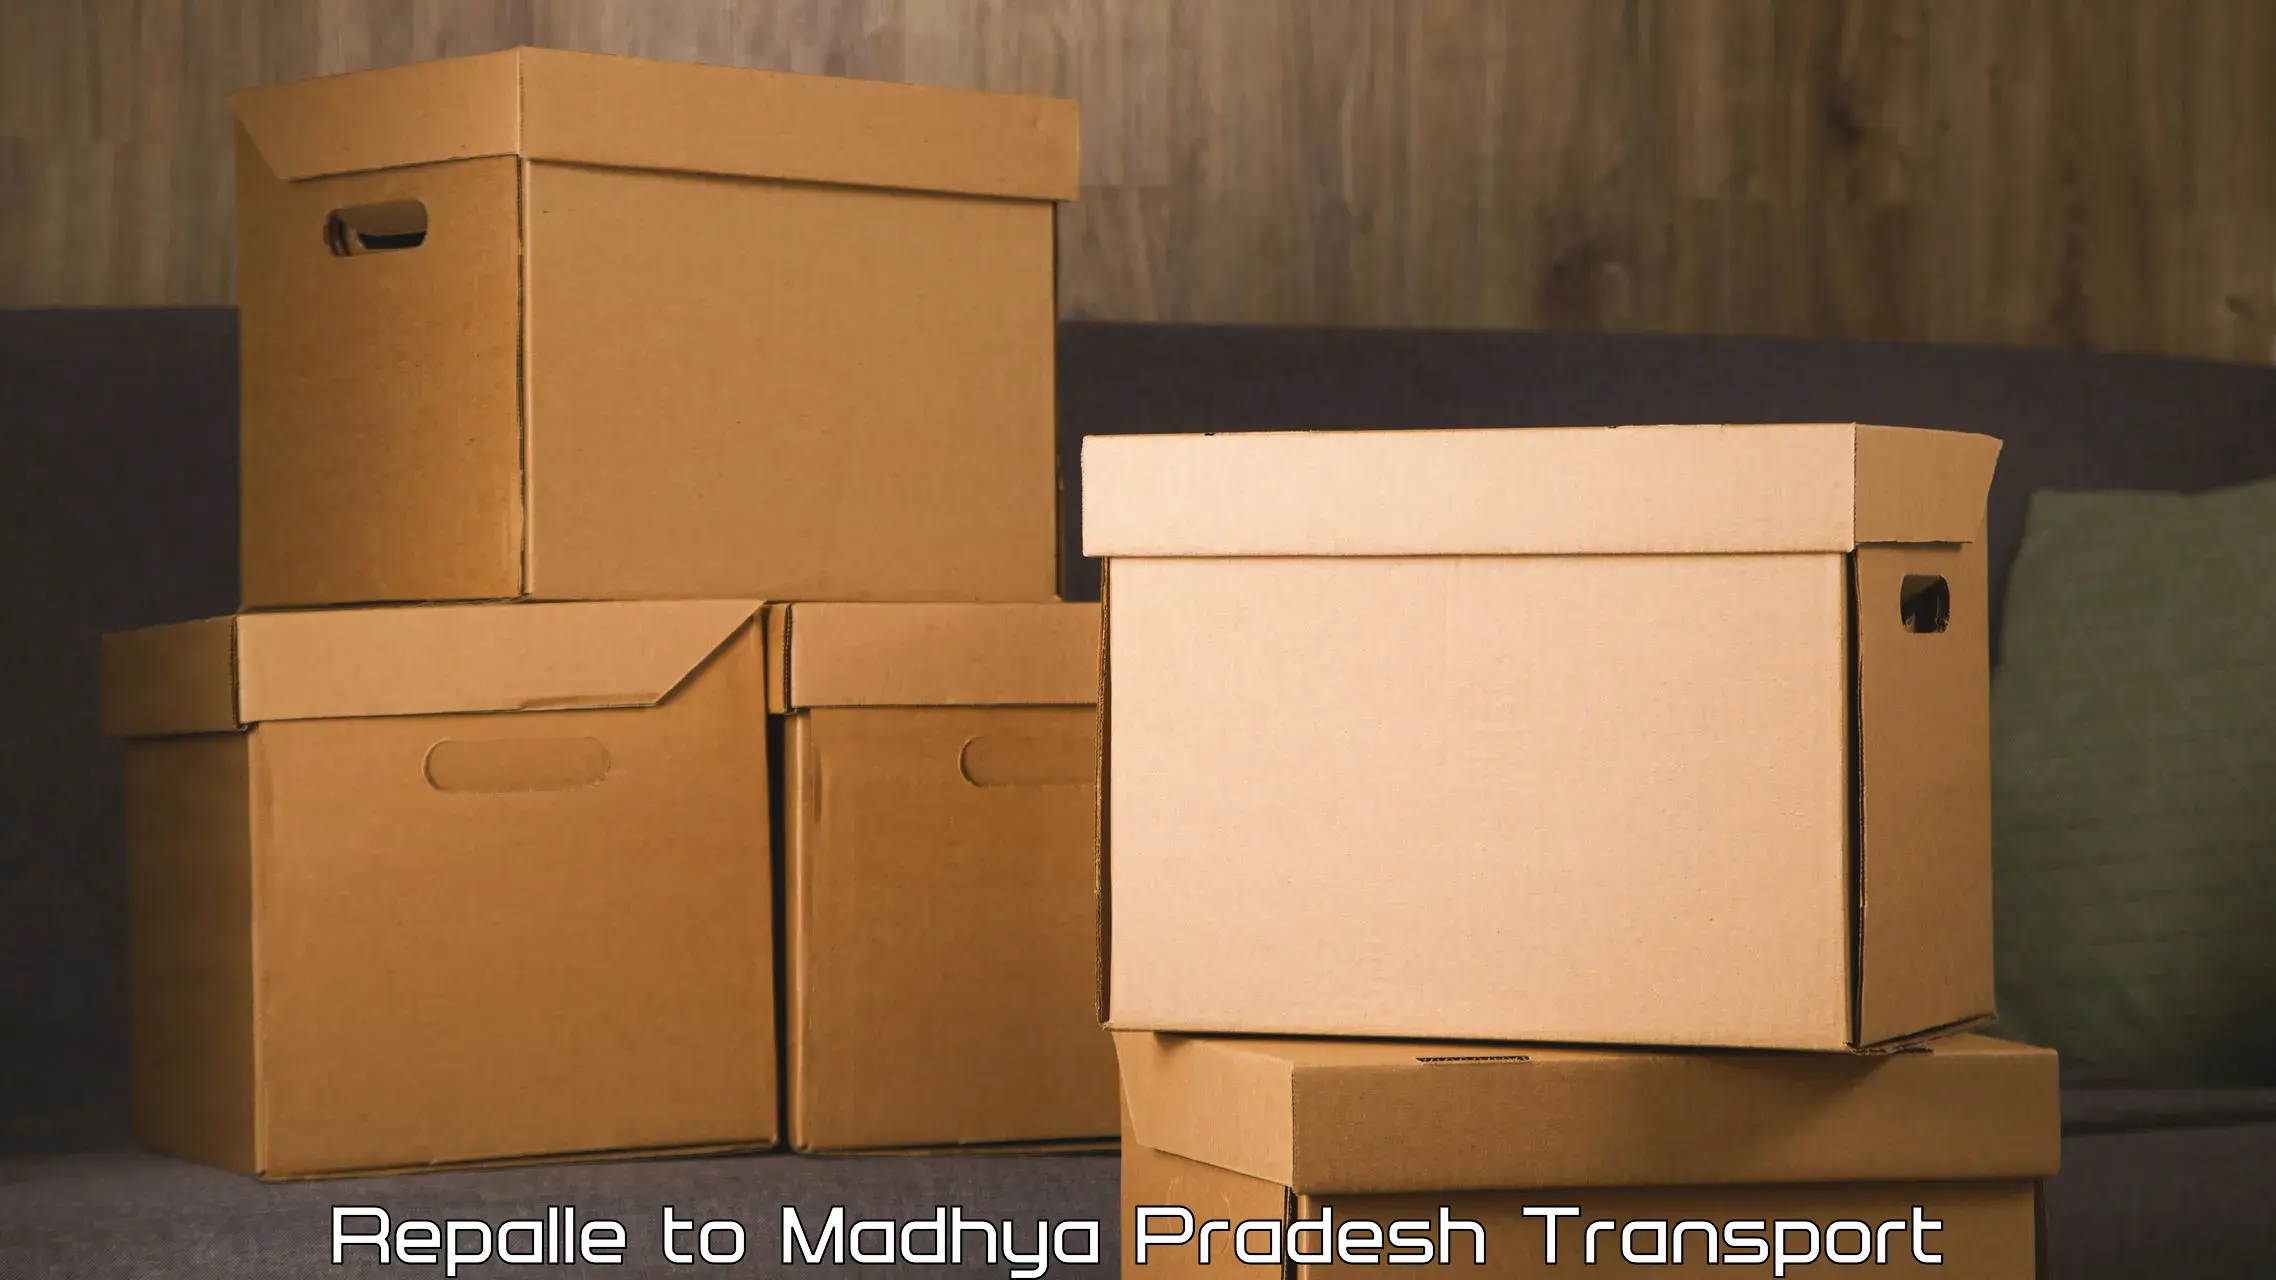 Transport in sharing Repalle to Madhya Pradesh